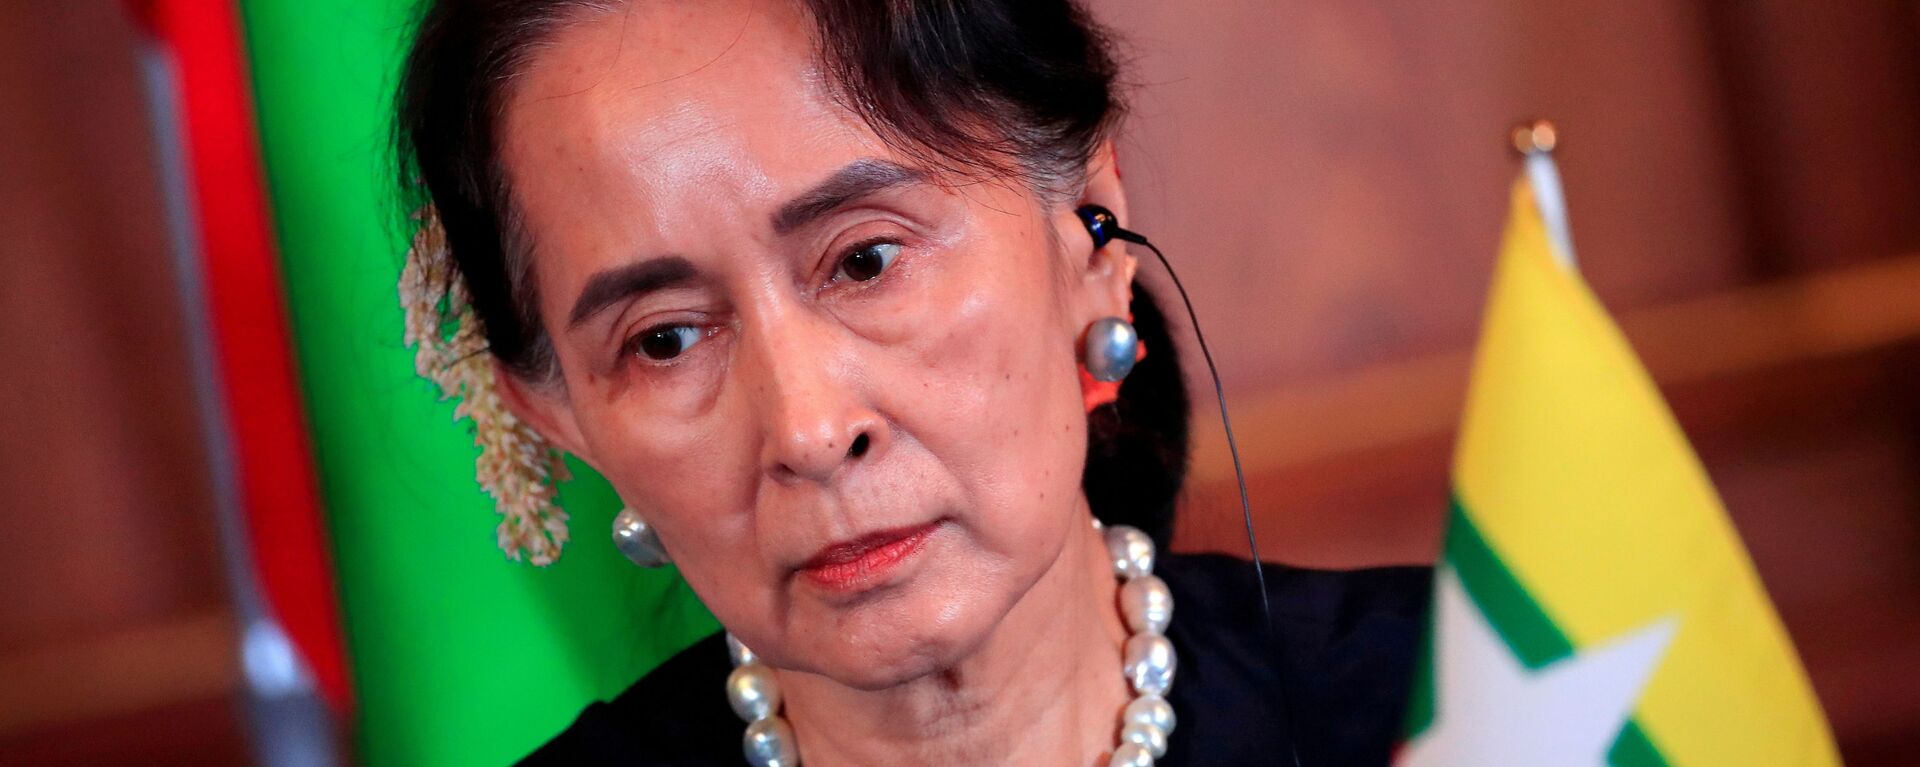 Cựu Cố vấn Nhà nước Myanmar Aung San Suu Kyi. - Sputnik Việt Nam, 1920, 06.12.2021